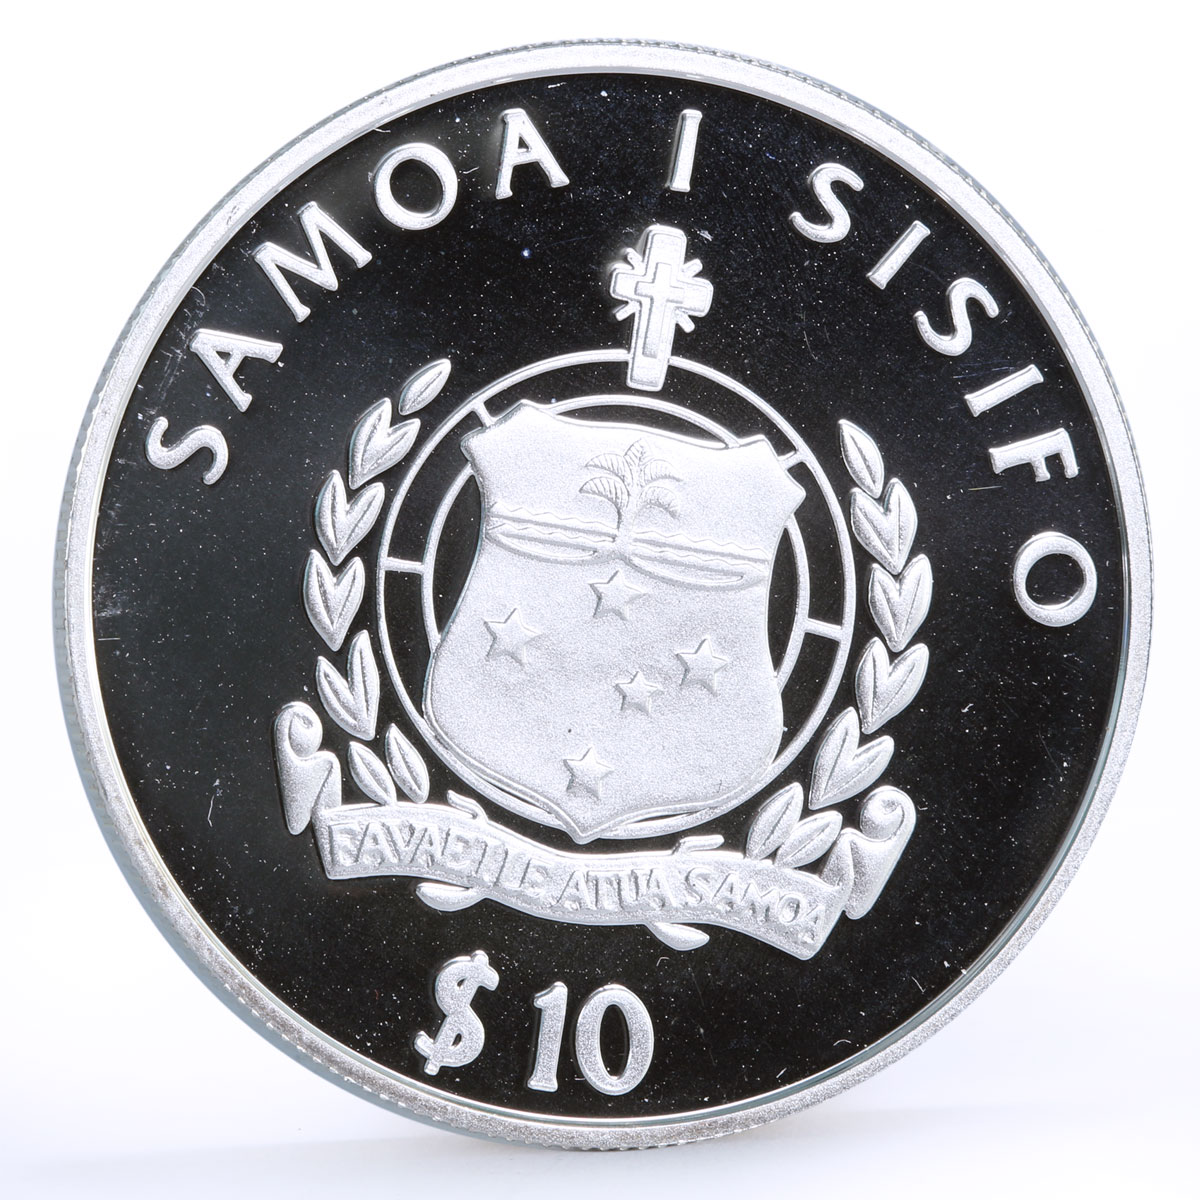 Samoa 10 dollars SMS Adler Ship Clipper Steamer proof silver coin 2003